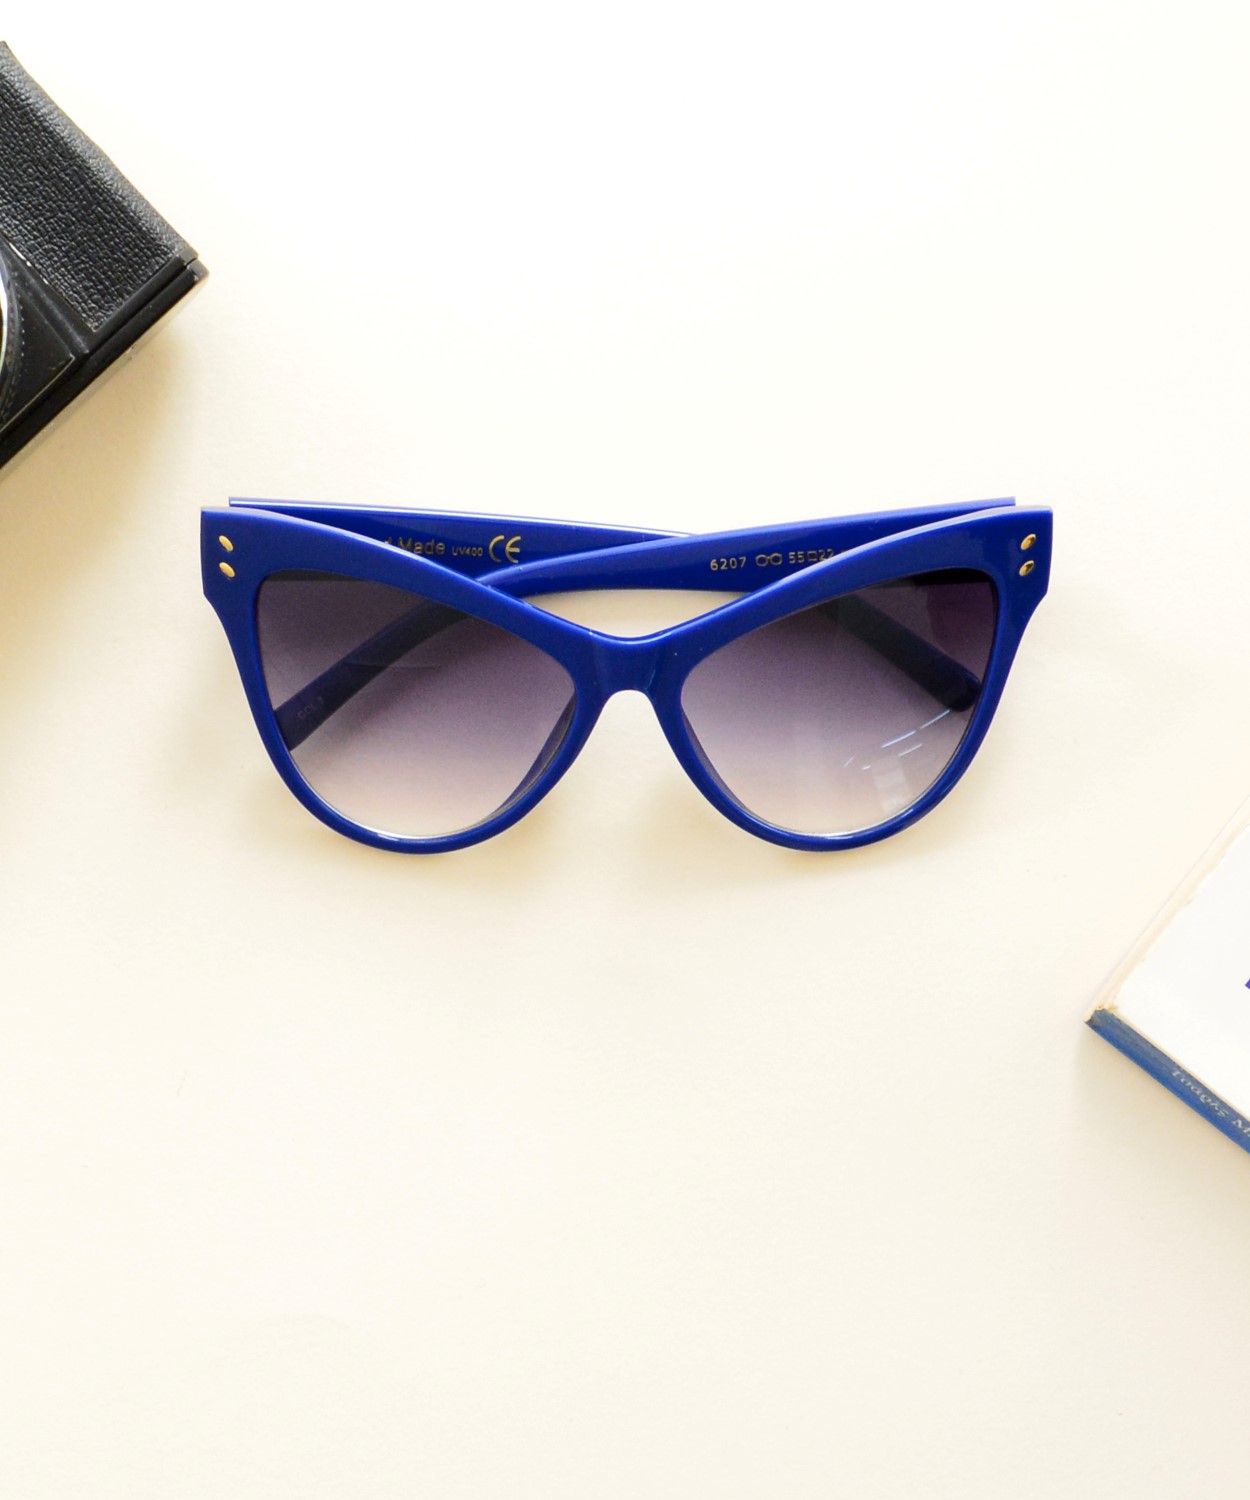 Γυναικεία γυαλιά ηλίου πεταλούδα μπλε Handmade S6207Q